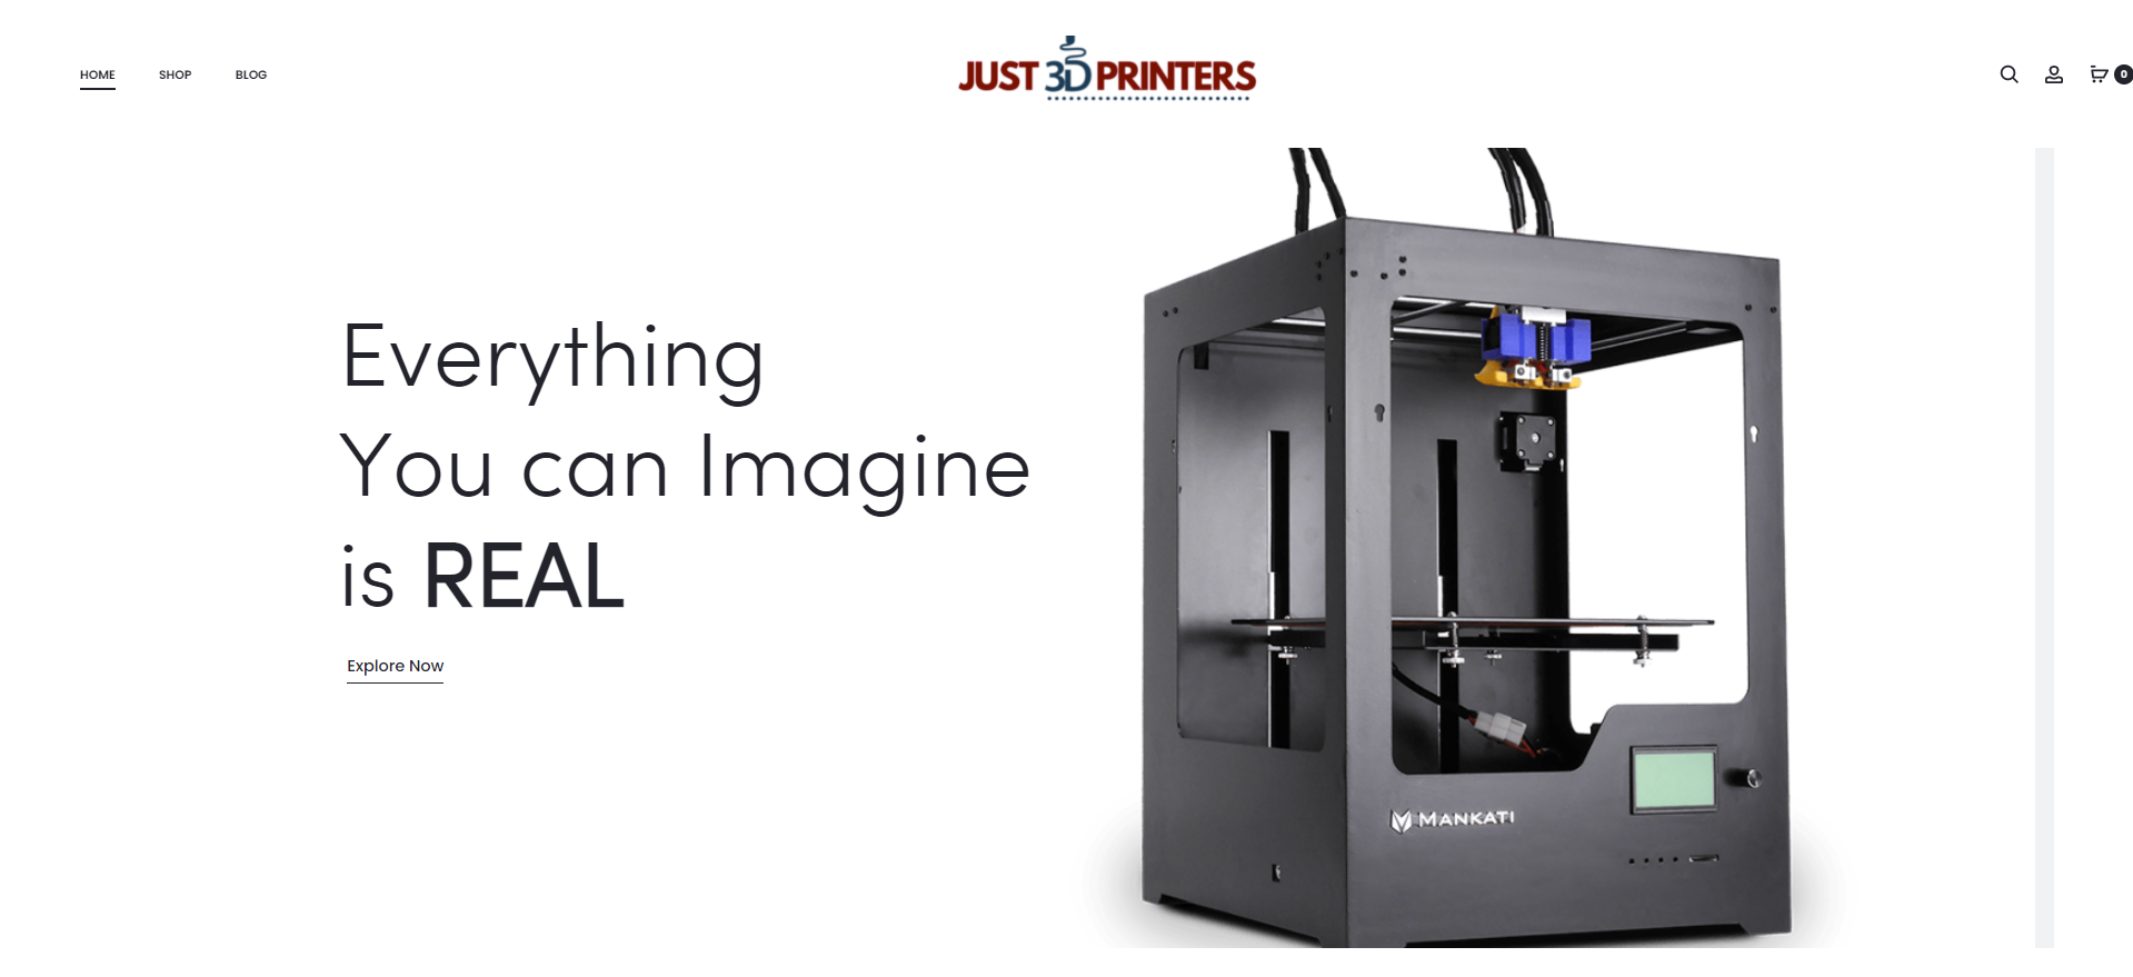 Just 3d Printers